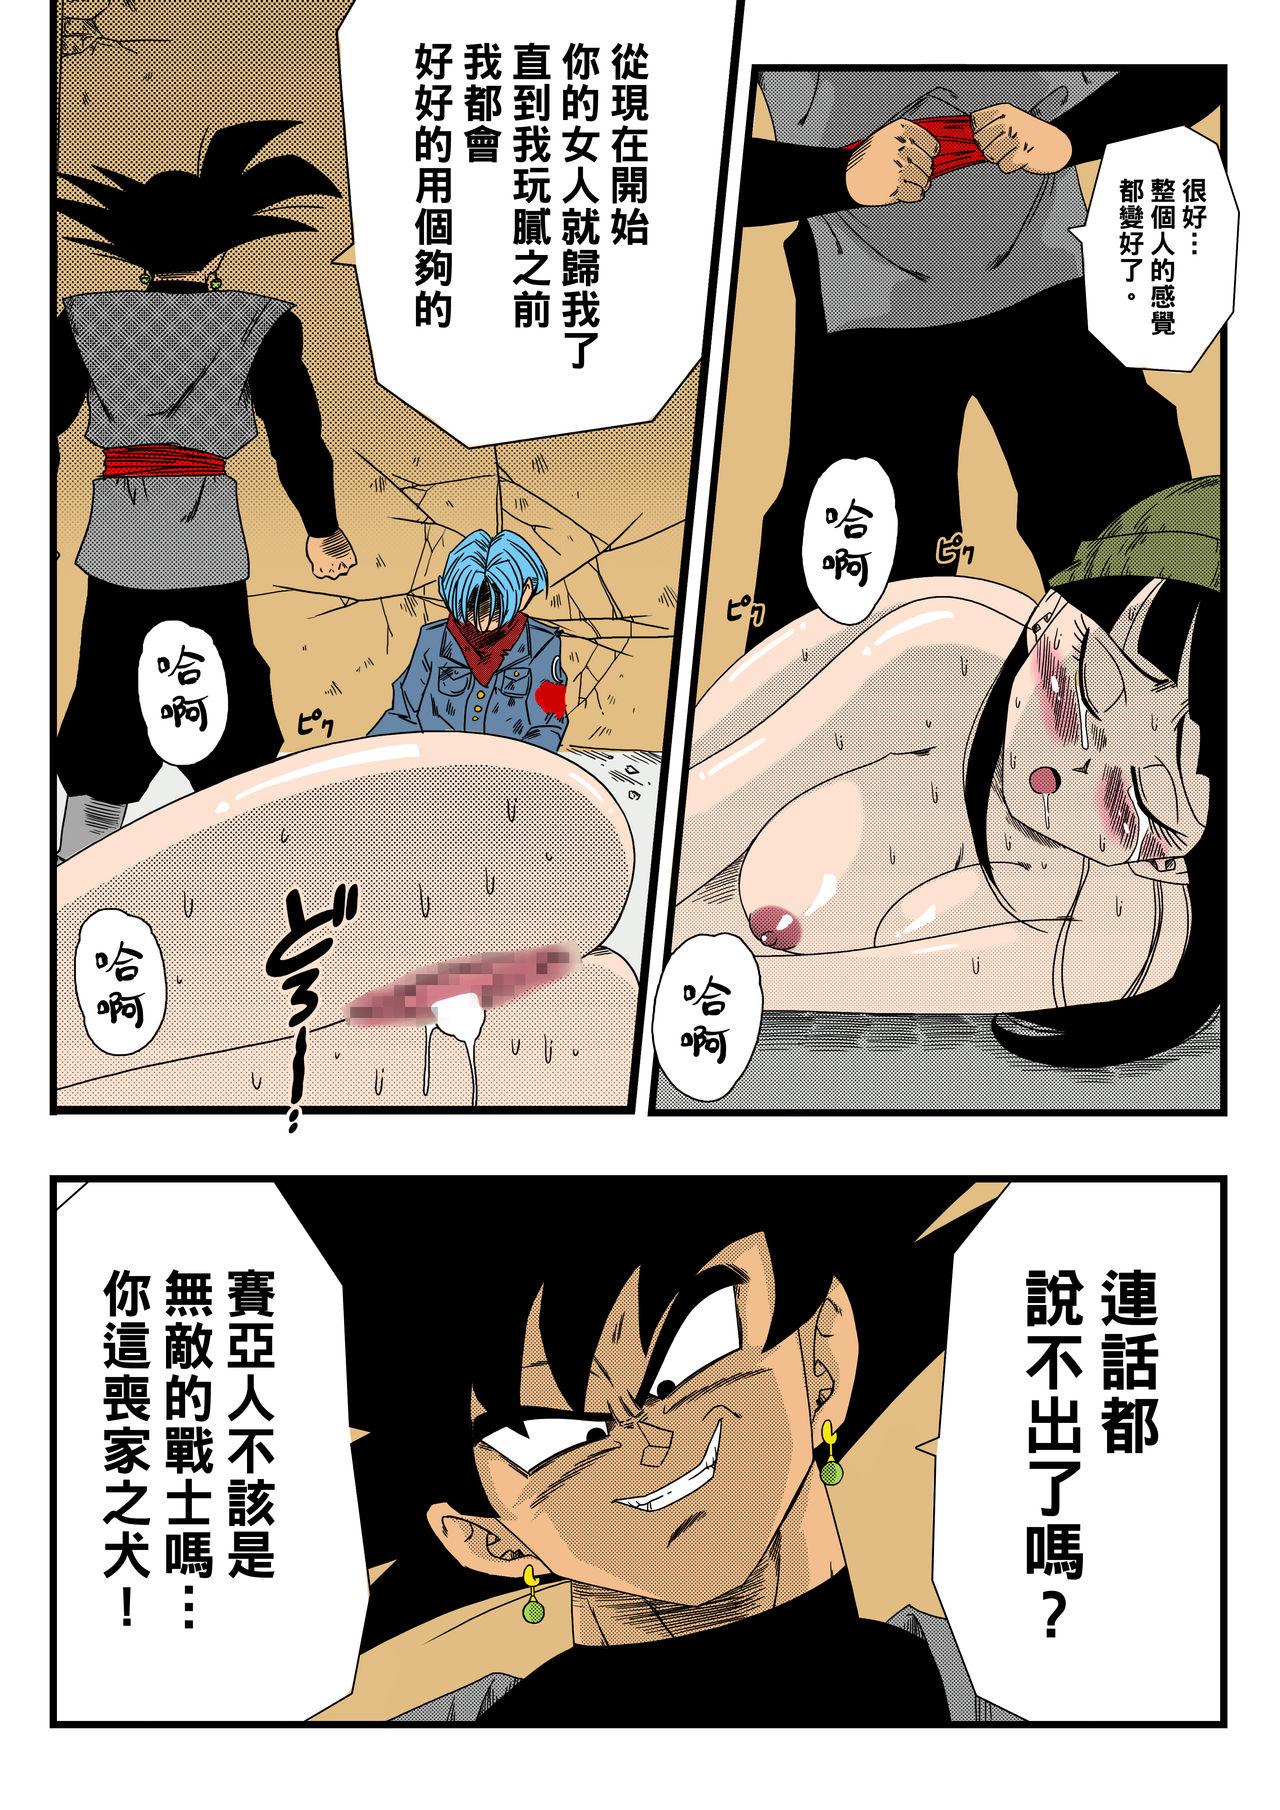 Cumfacial Black, Mirai no Hero o Taosu! Teisou na Kanojo ga Gisei ni! - Dragon ball super Shot - Page 9